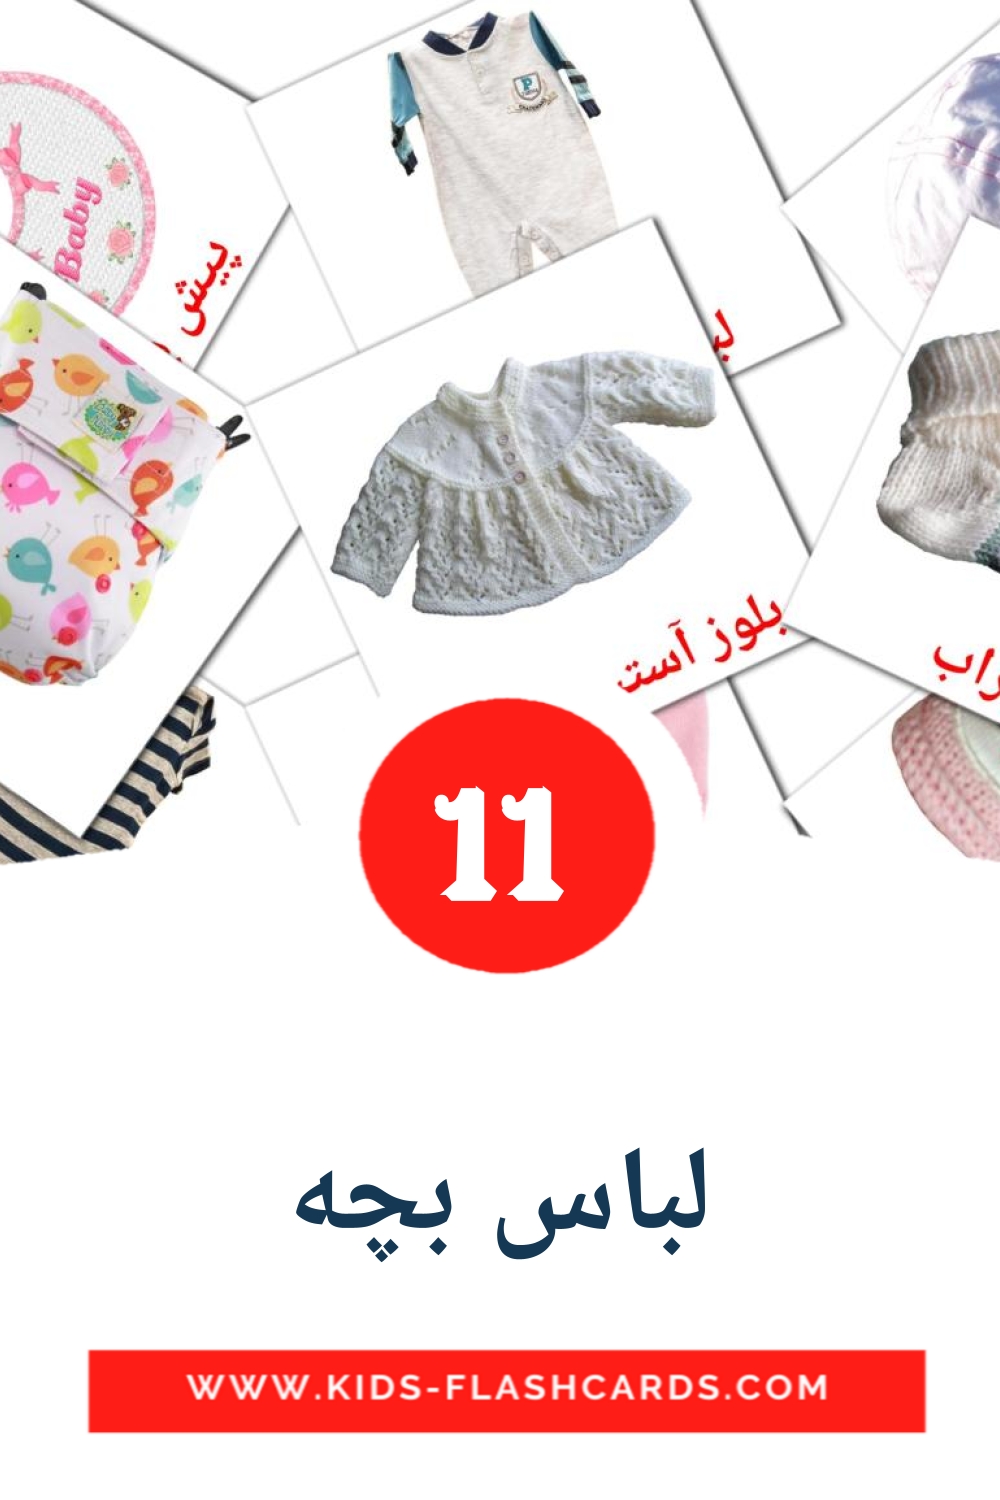 11 cartes illustrées de لباس بچه pour la maternelle en persan